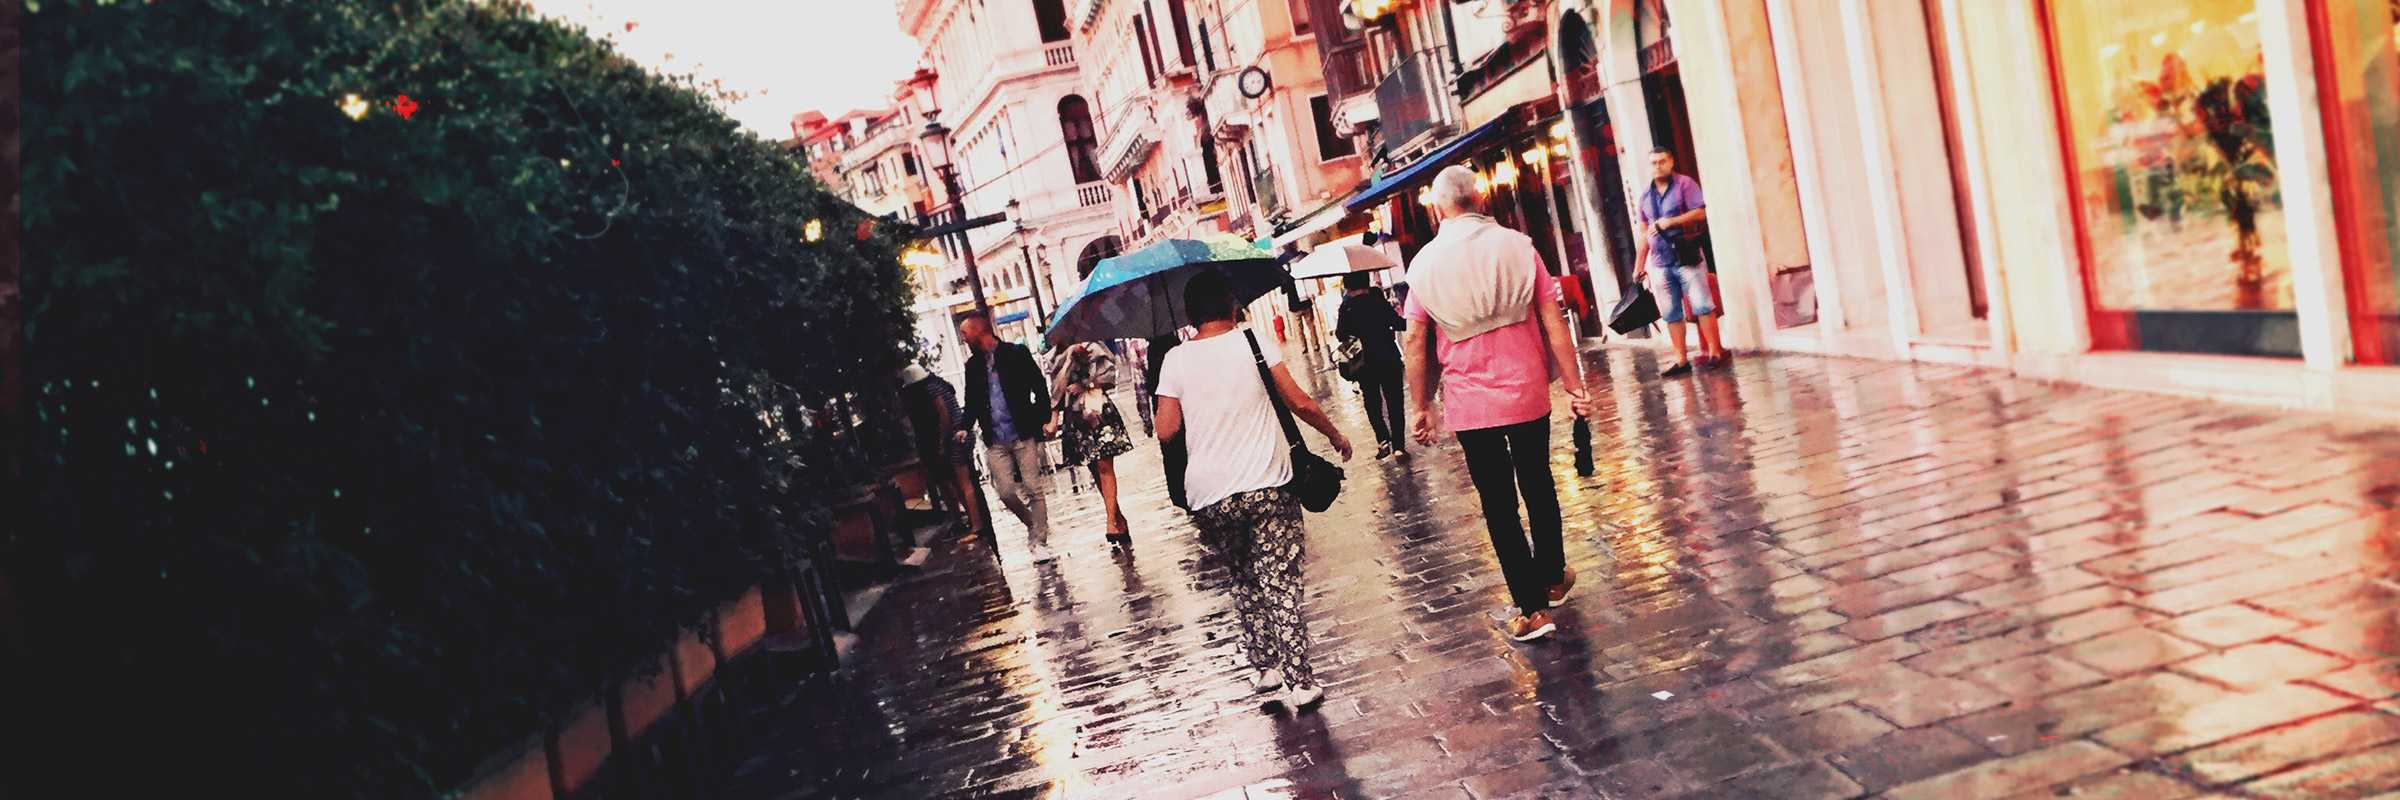 Quotidianità a Rialto durante giornate di pioggia. — (Archivio Venipedia/Bazzmann)